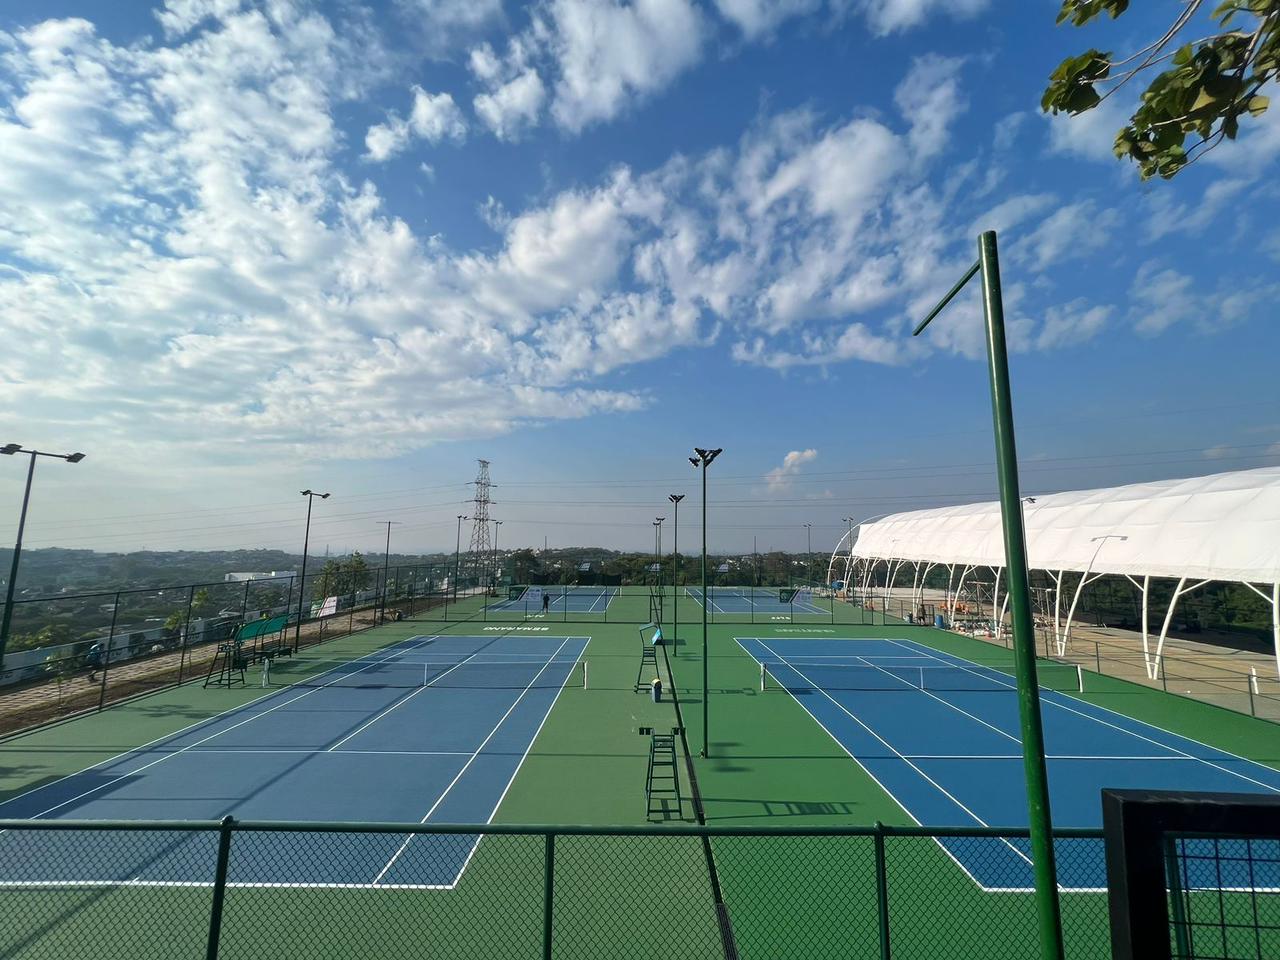 Lapangan BUKITSARI TENNIS PARK Lapangan Tennis